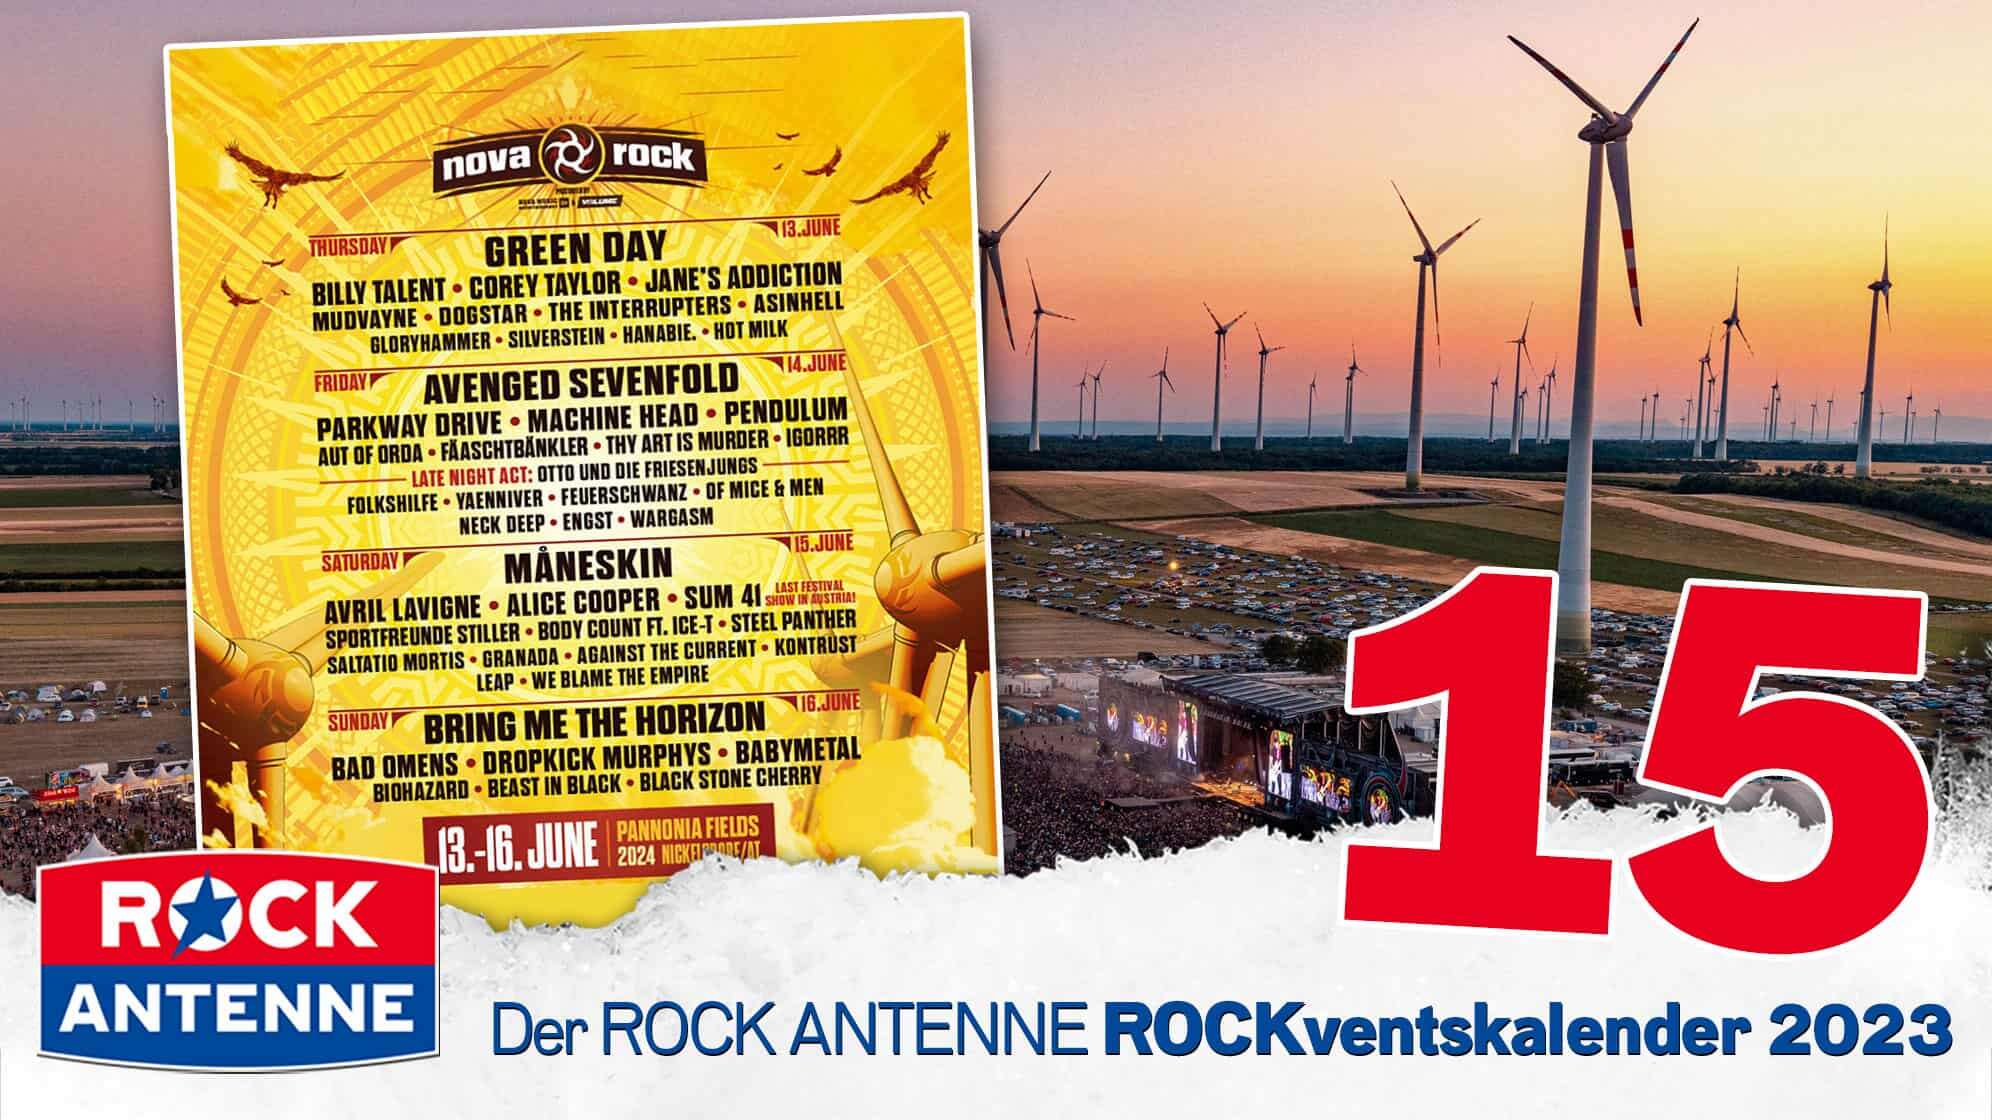 ROCK ANTENNE ROCKventskalender Türchen 15: 2 Festivaltickets für das NOVA ROCK Festival 2024 in Österreich